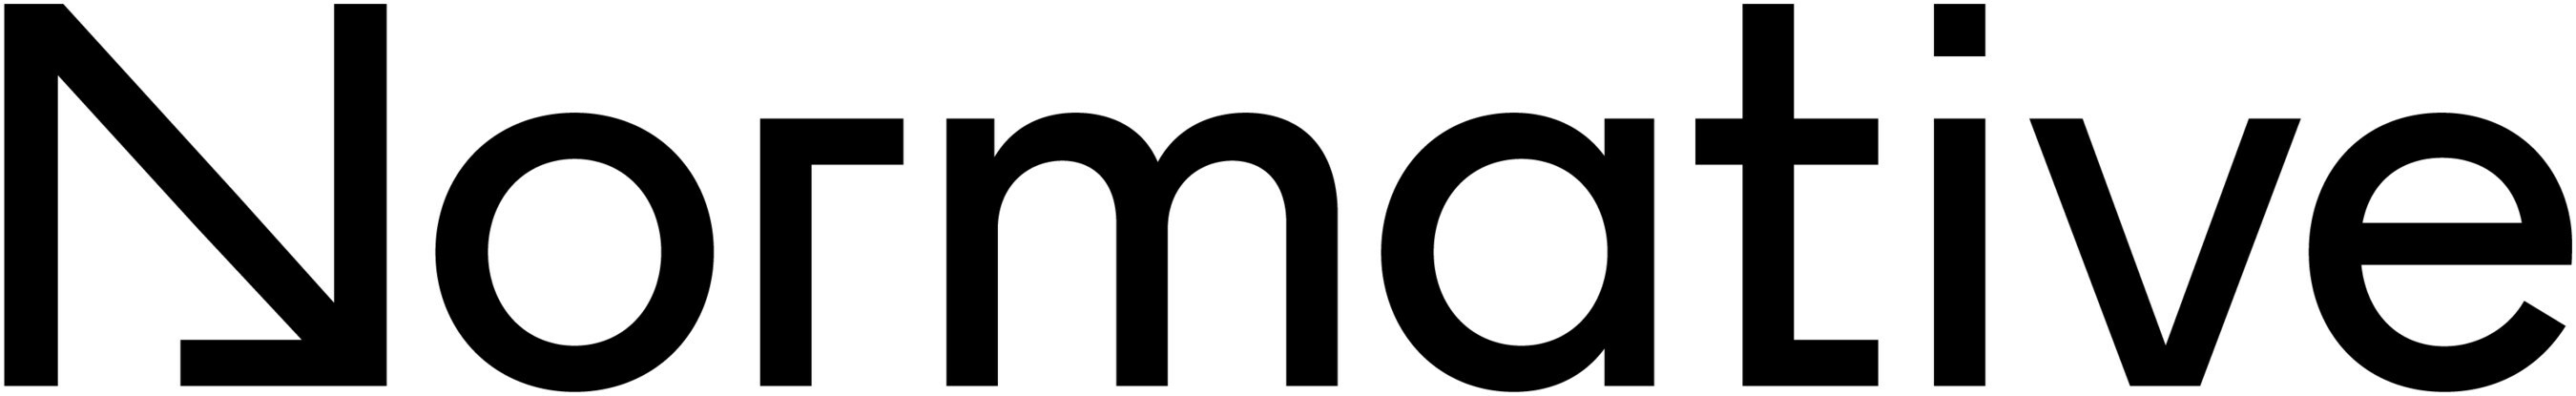 Normative Logo (PRNewsfoto/Normative)